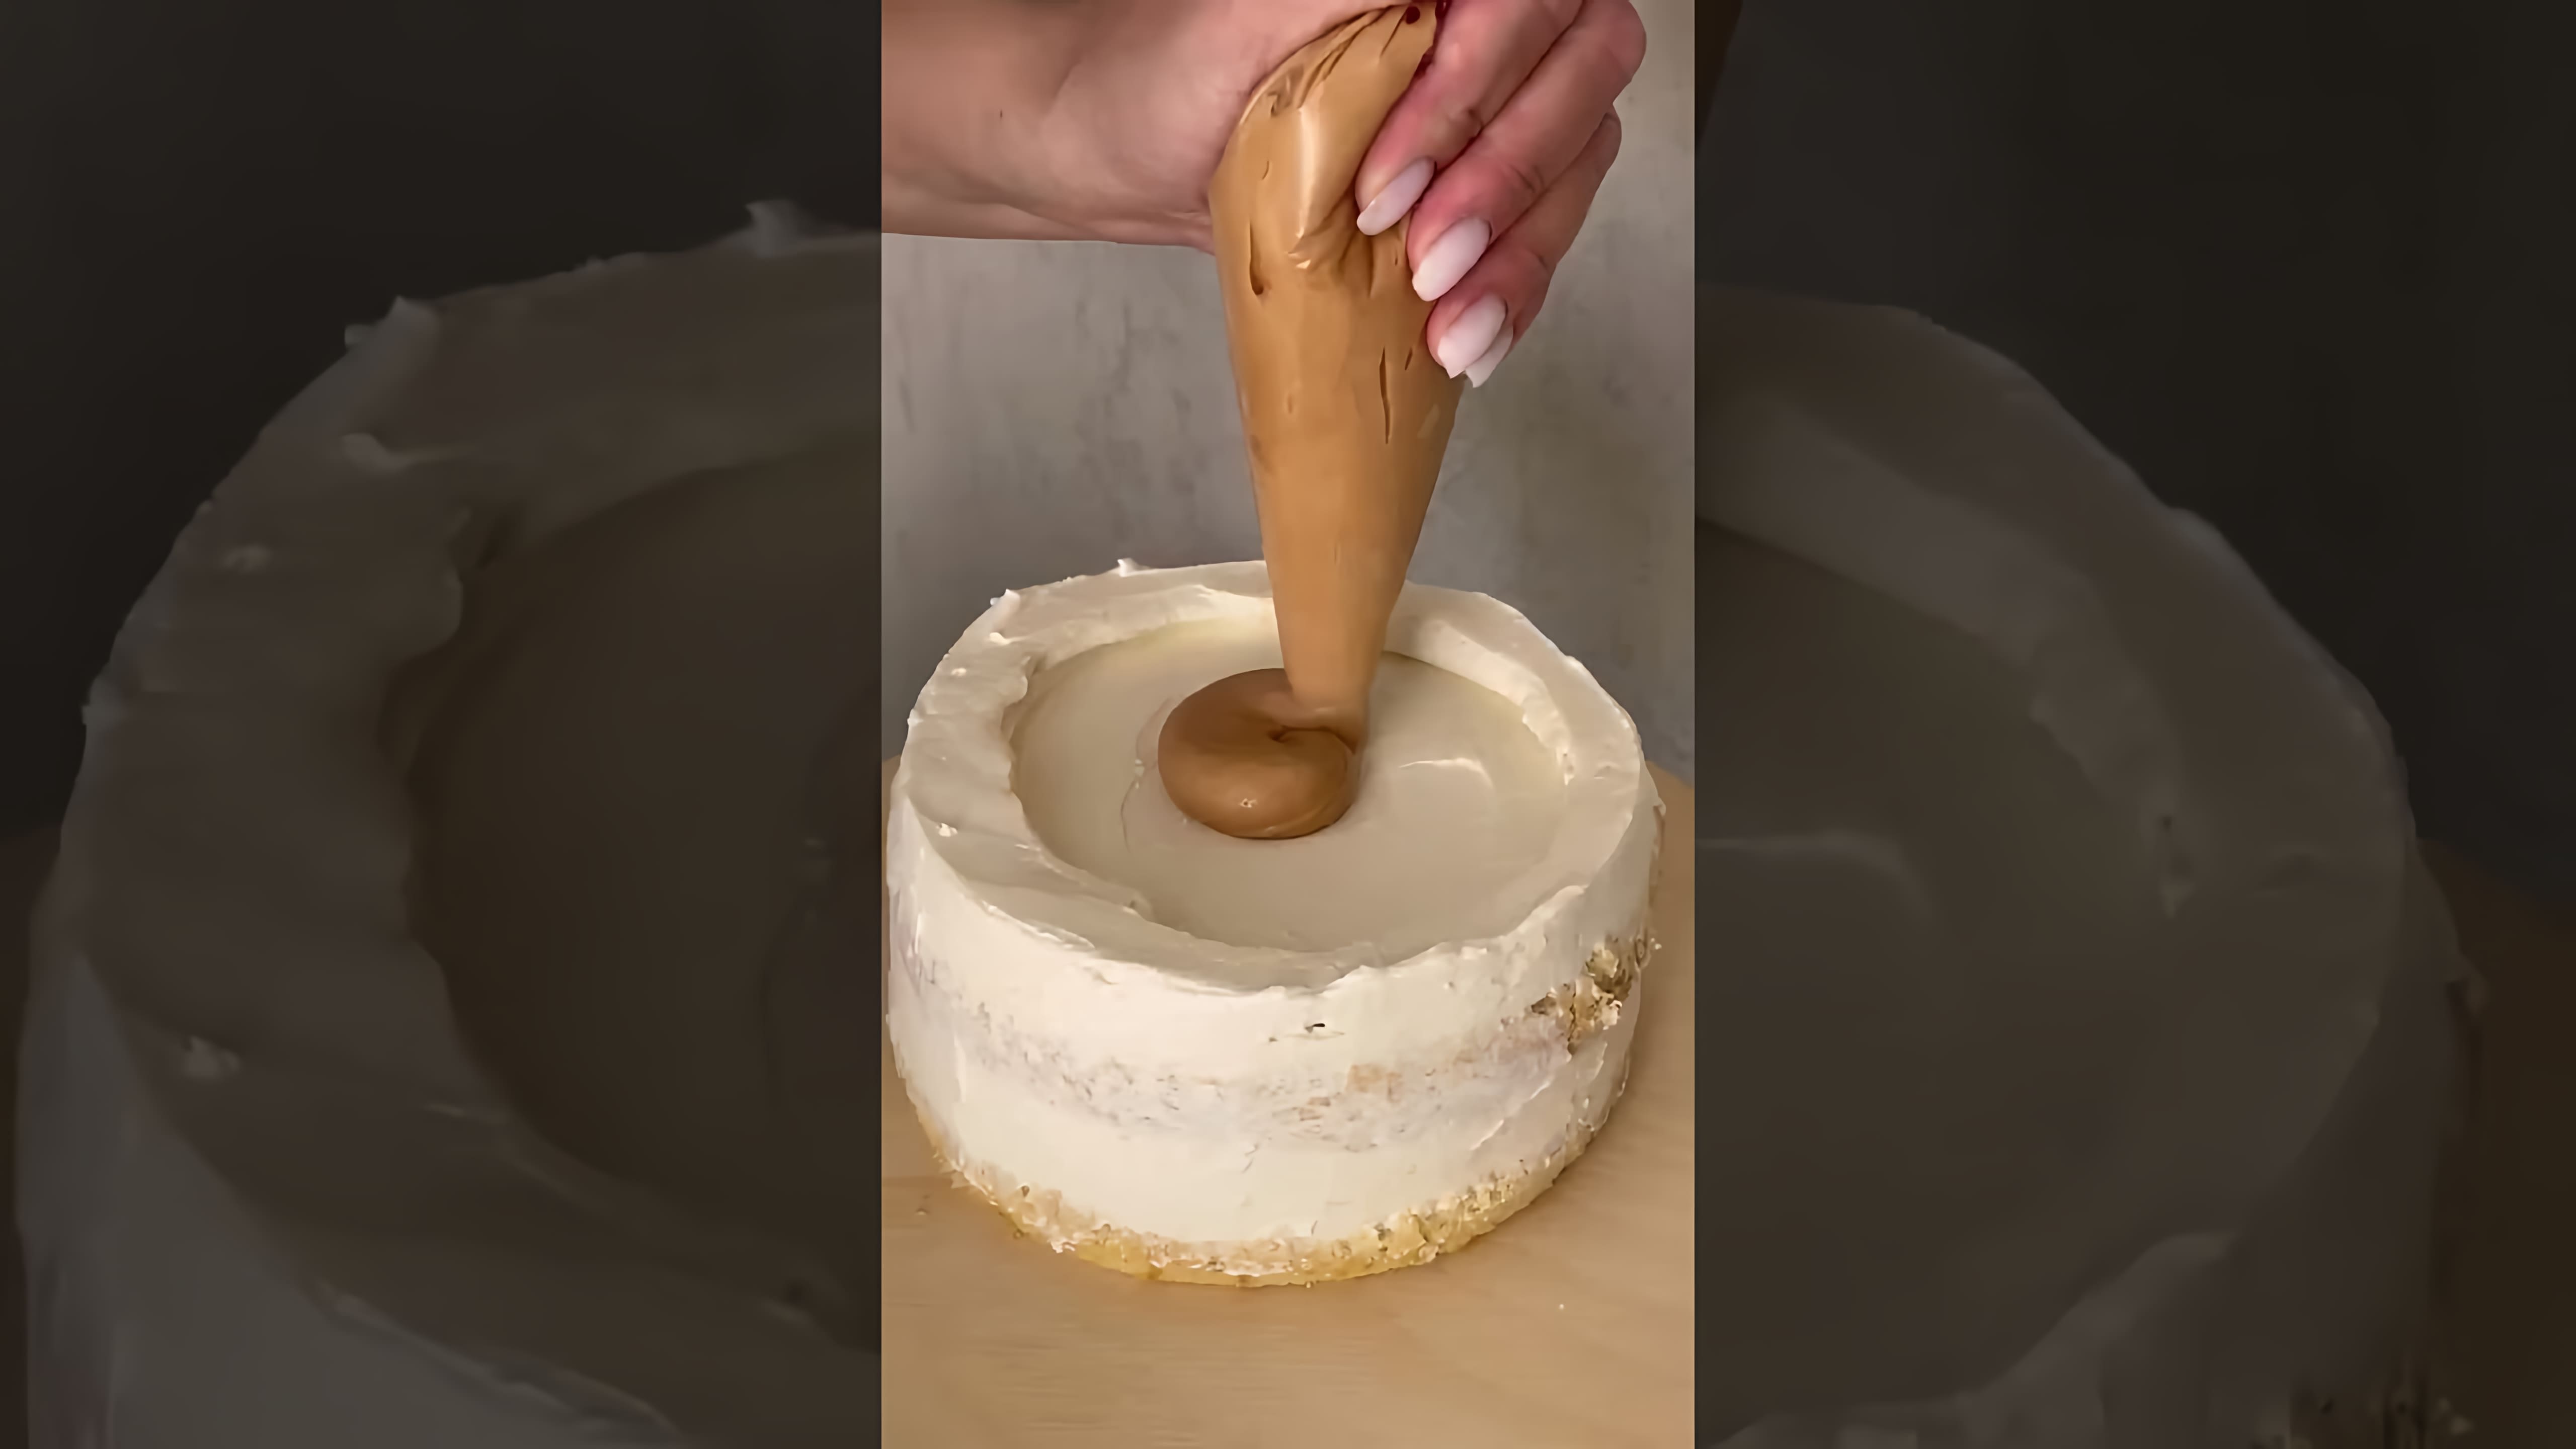 Рецепт торта "Карамельная груша" от Полины @shum_cake - это видео-ролик, в котором автор делится своим опытом приготовления вкусного и оригинального десерта